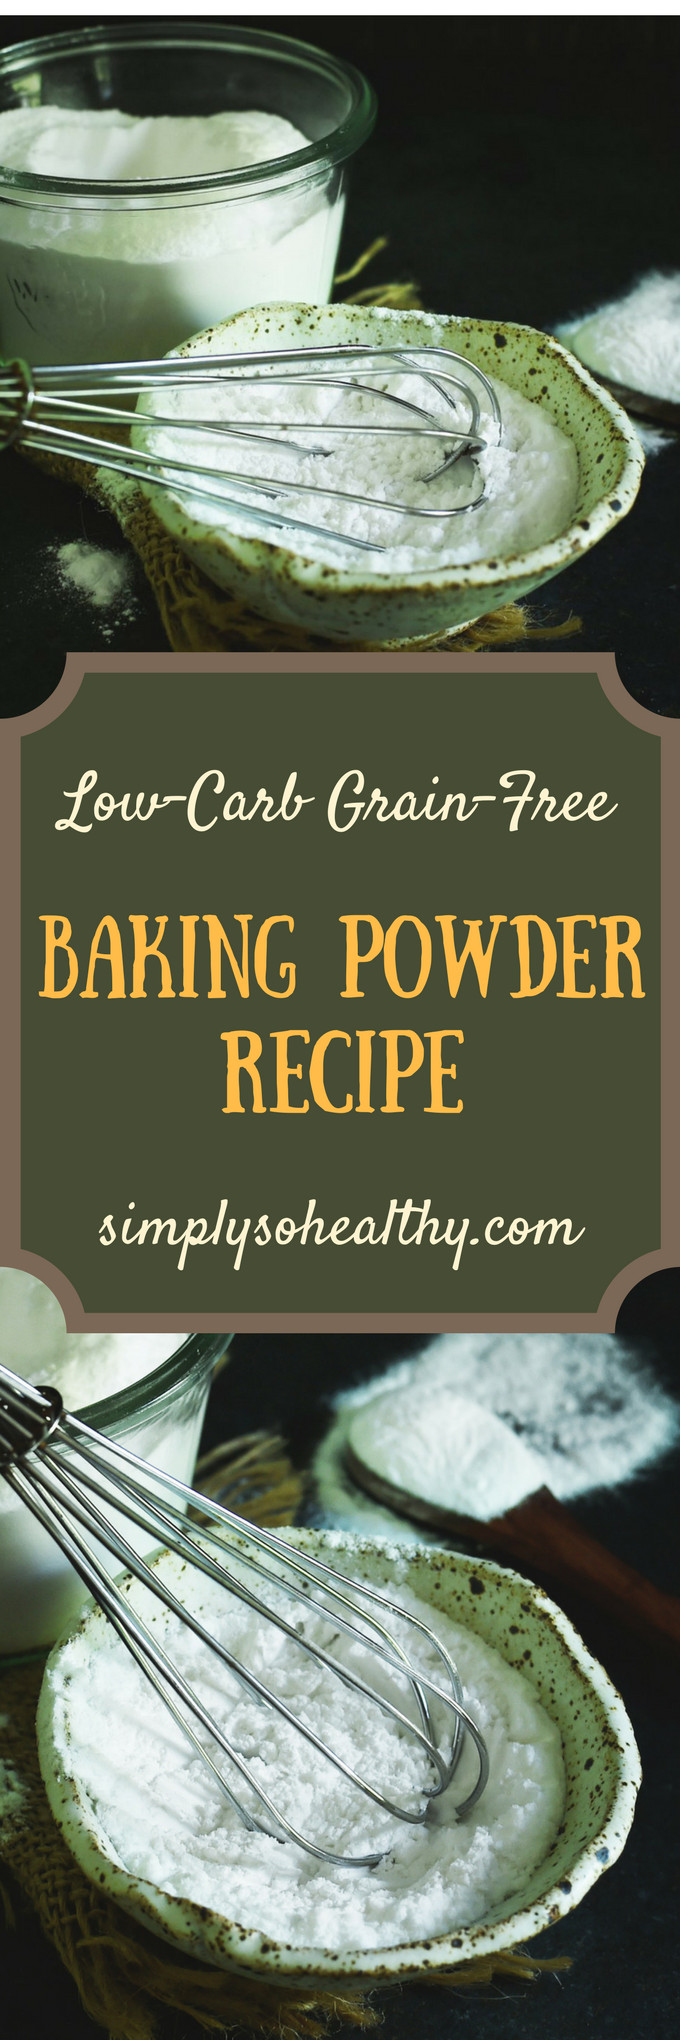 Low Carb Baking Powder
 Low Carb Baking Powder Recipe Simply So Healthy